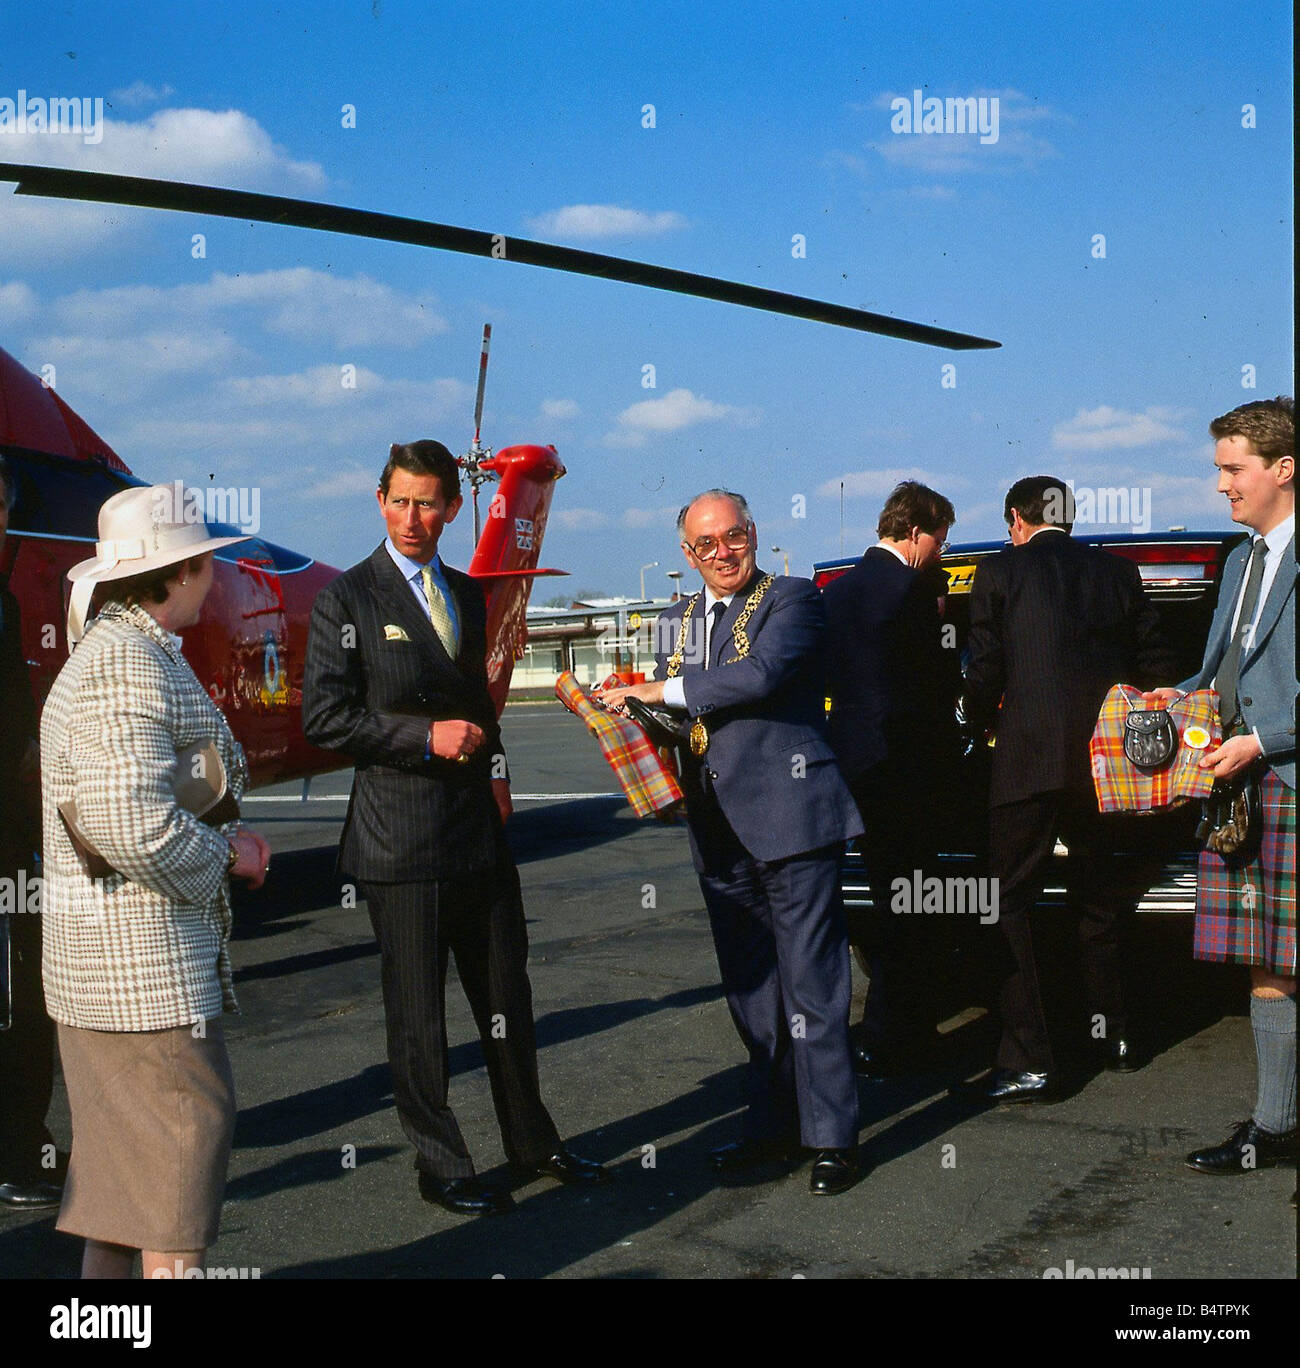 Le prince Charles prince de Galles Mai 1988 réunion Maire Robert Gray à l'aéroport de Glasgow hélicoptère royal en arrière-plan C T Roy Brit le Prince Charles l'Ecosse Banque D'Images